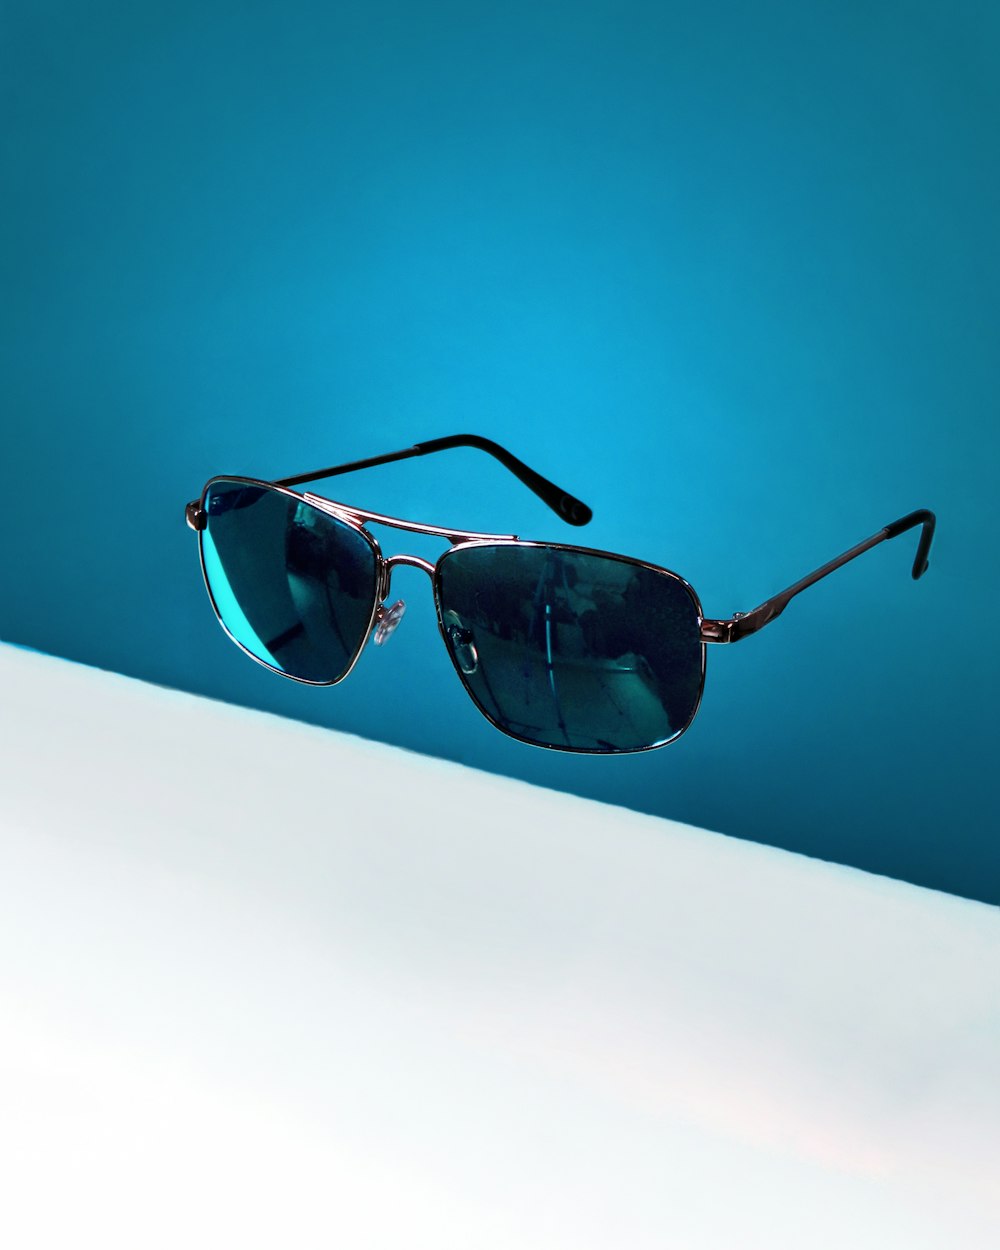 black framed aviator style sunglasses